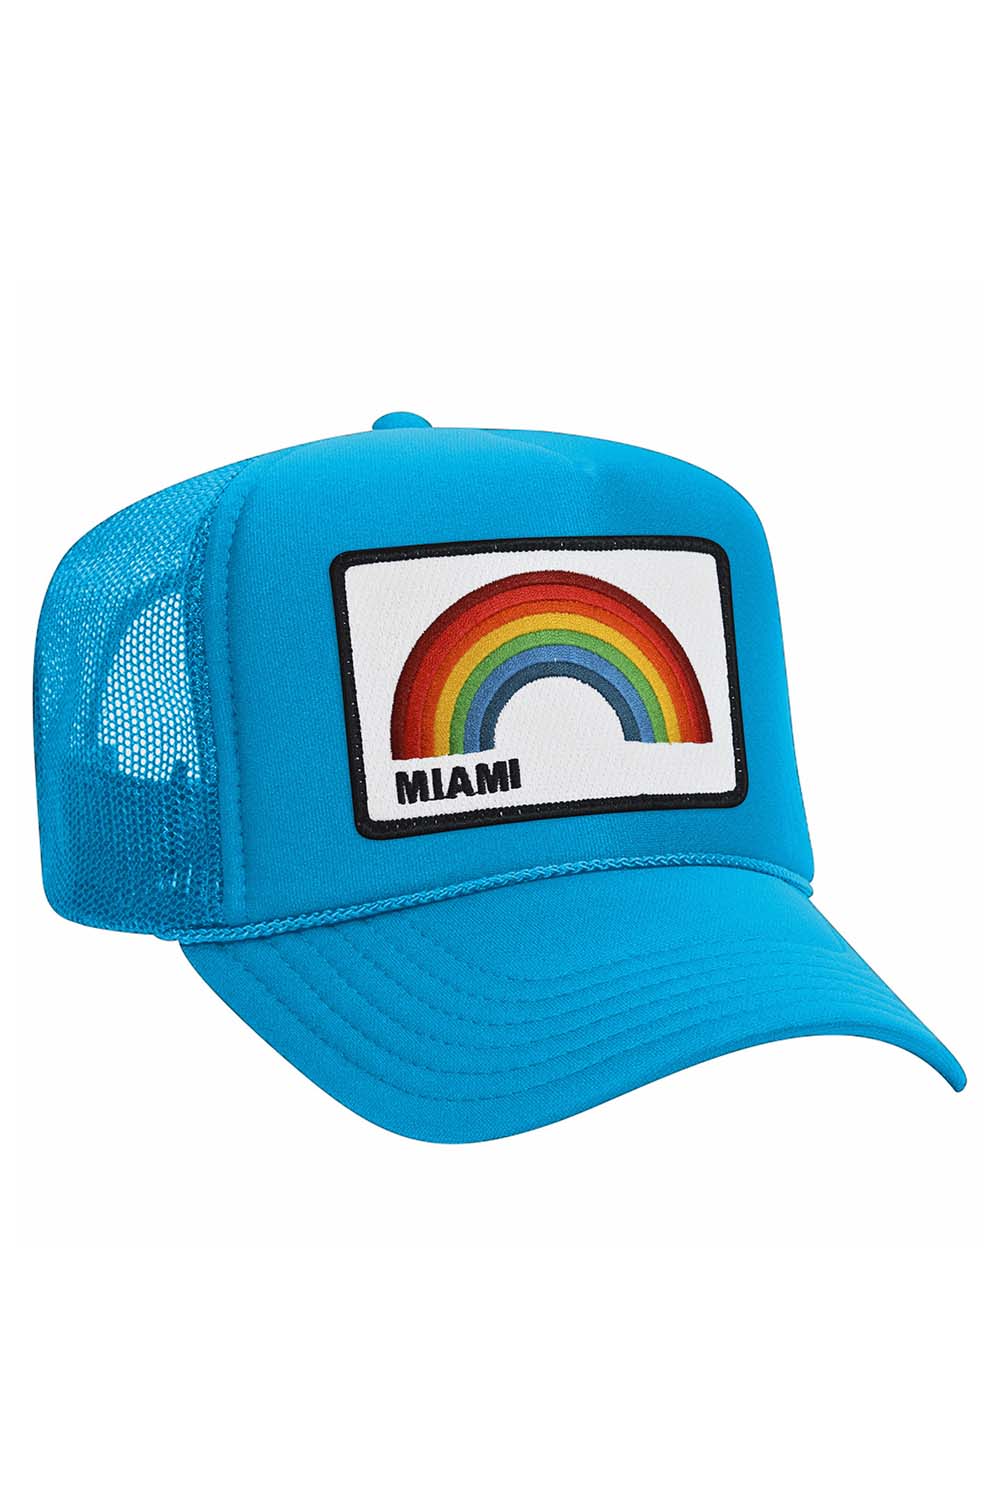 MIAMI RAINBOW TRUCKER HAT HATS Aviator Nation OS NEON PINK 